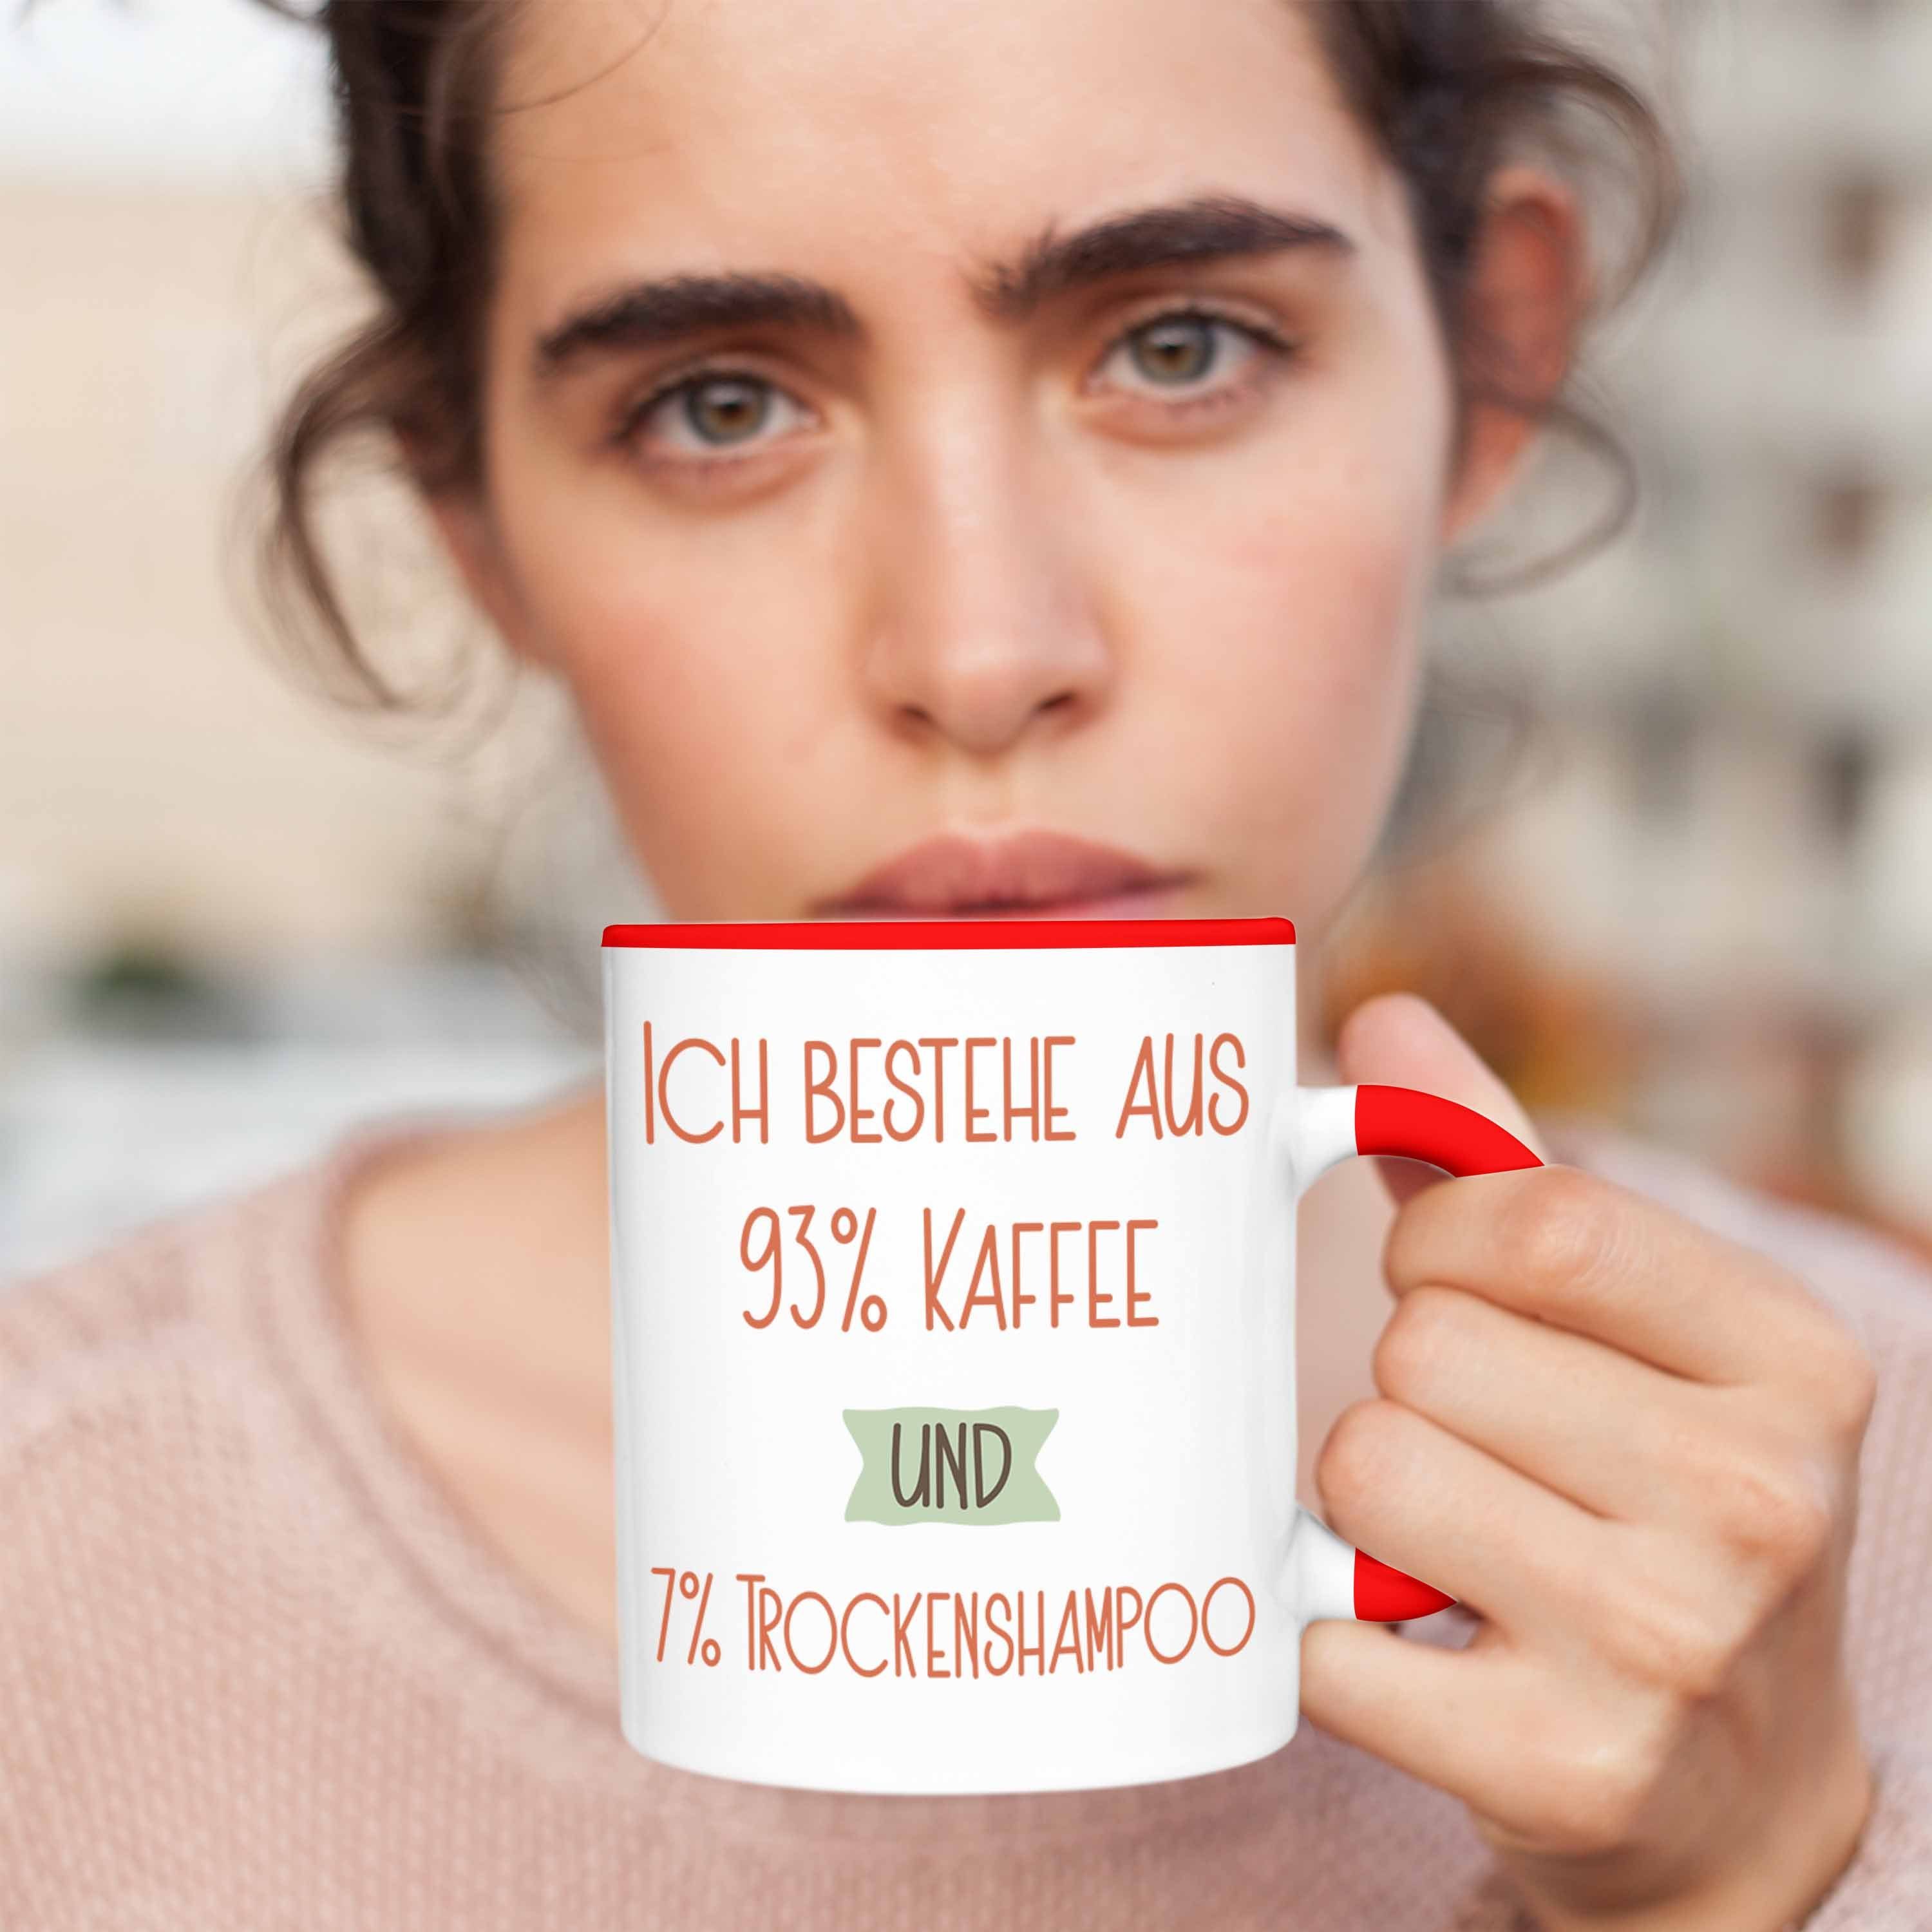 Trendation Tasse 93% Kaffee und Lustiger Für Rot Tasse Trockenshampoo 7% Ko Geschenk Spruch